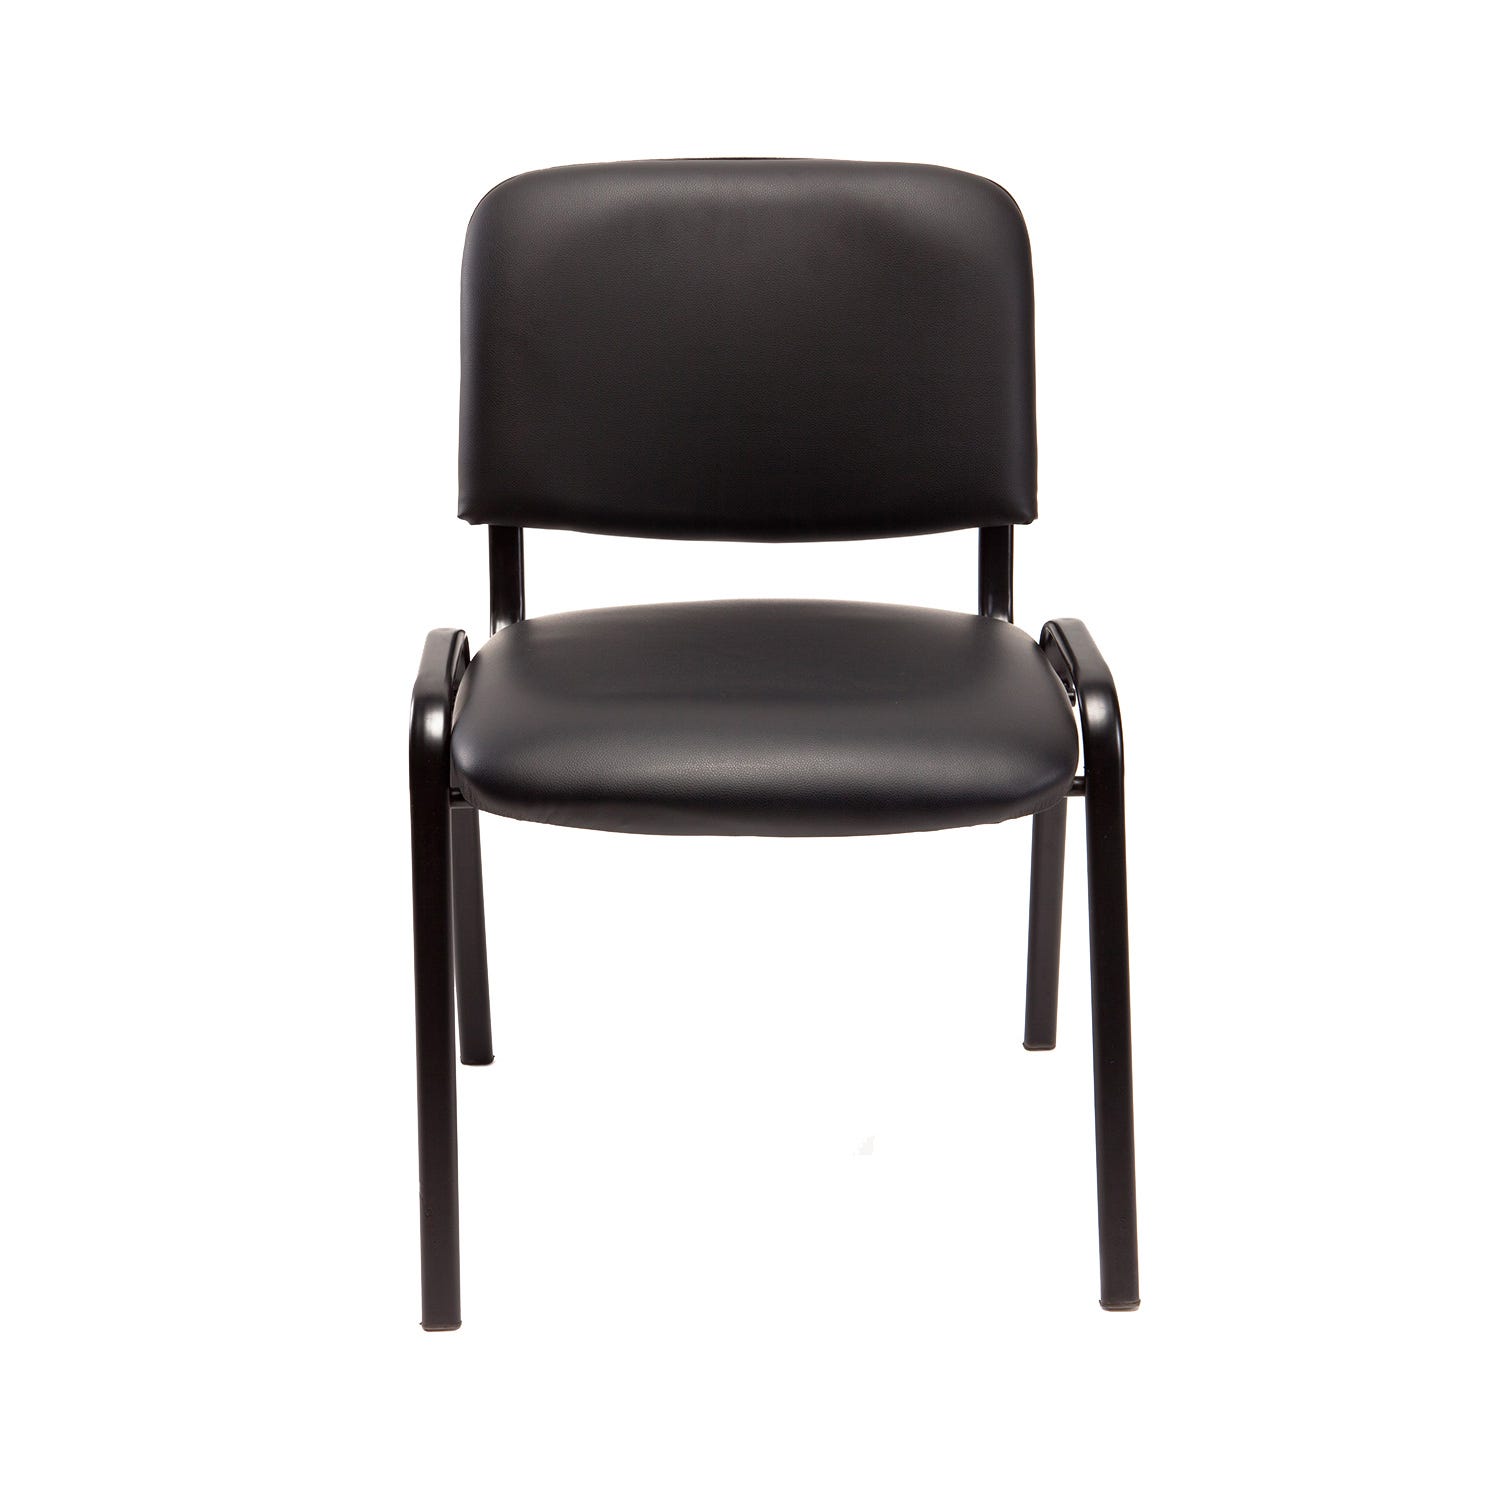 Set di due sedie impilabili nere